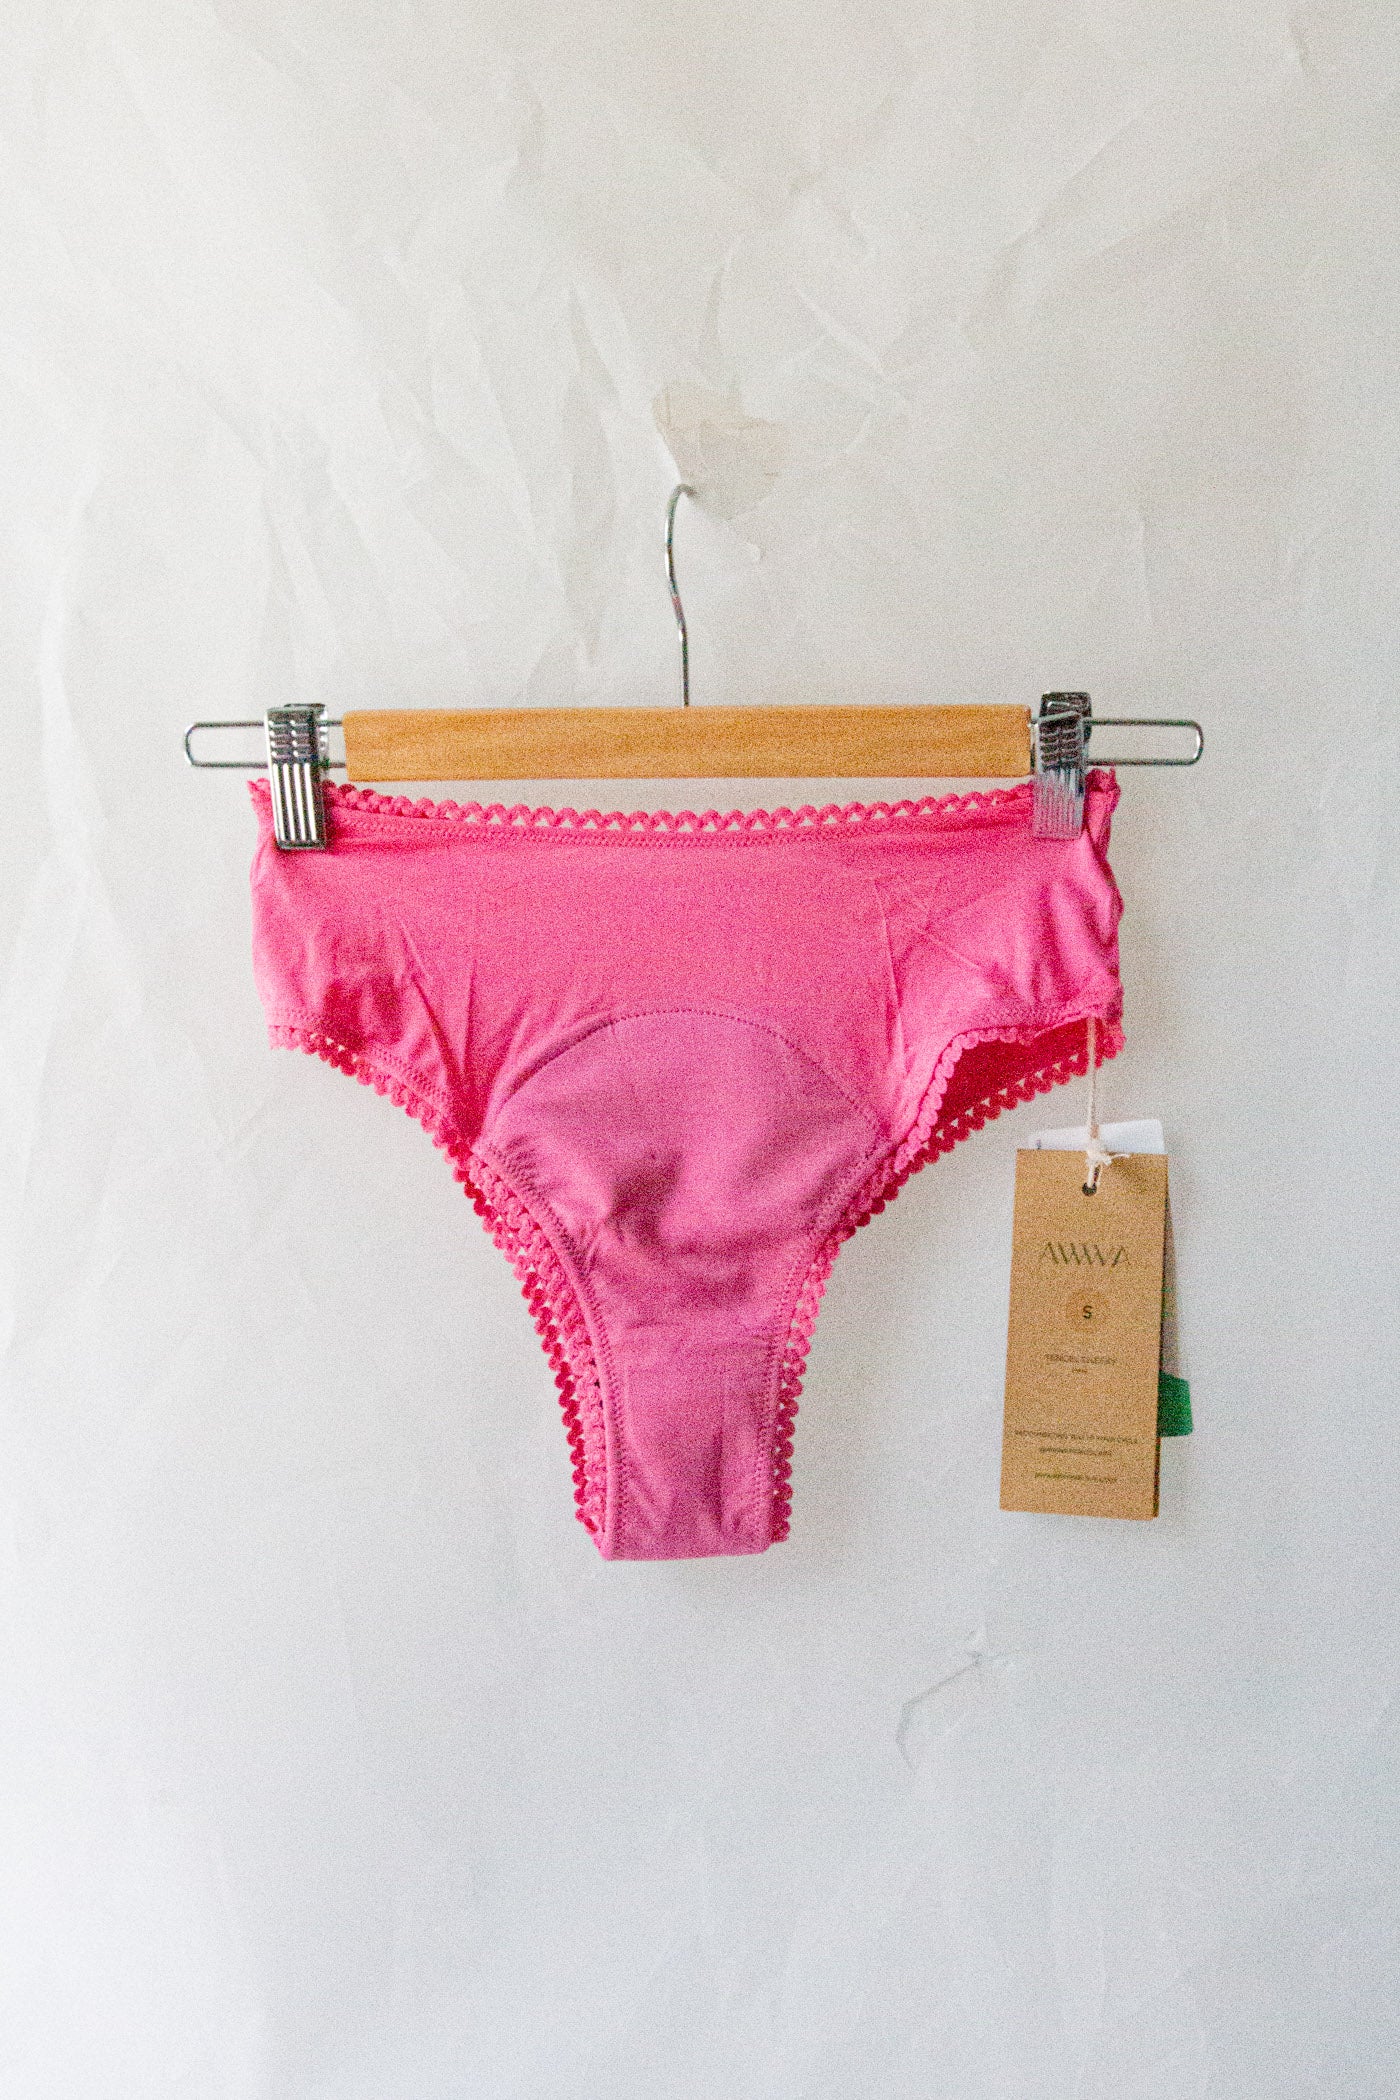 NEW Period Panties » DIY Naturally »South Africa